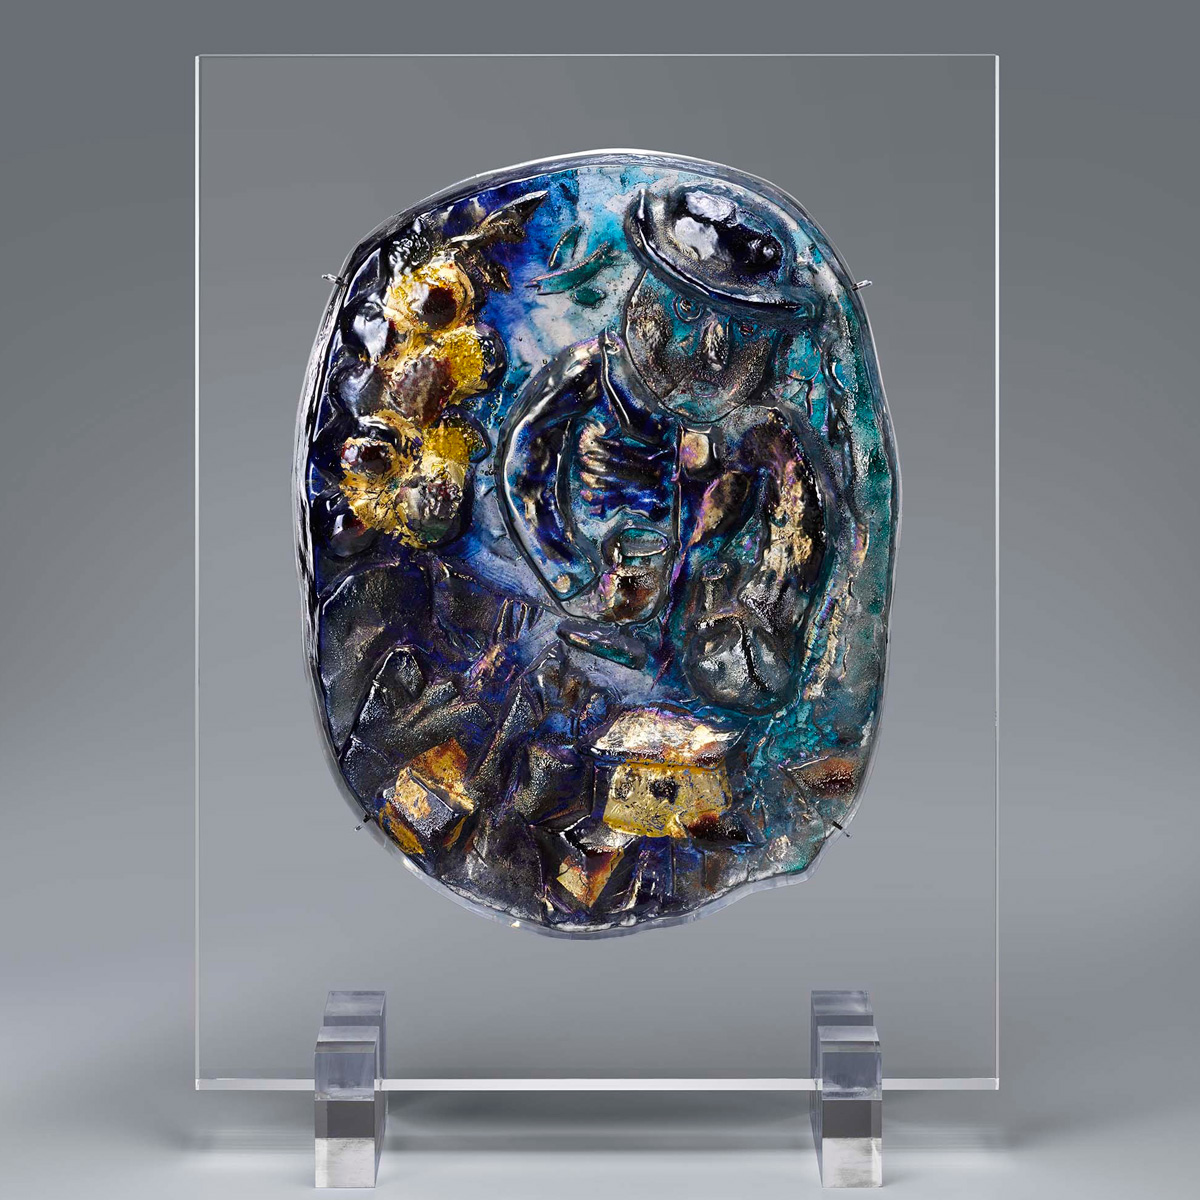 2019年特別企画展:ピカソ・シャガールたちのヴェネチアン グラス彫刻展